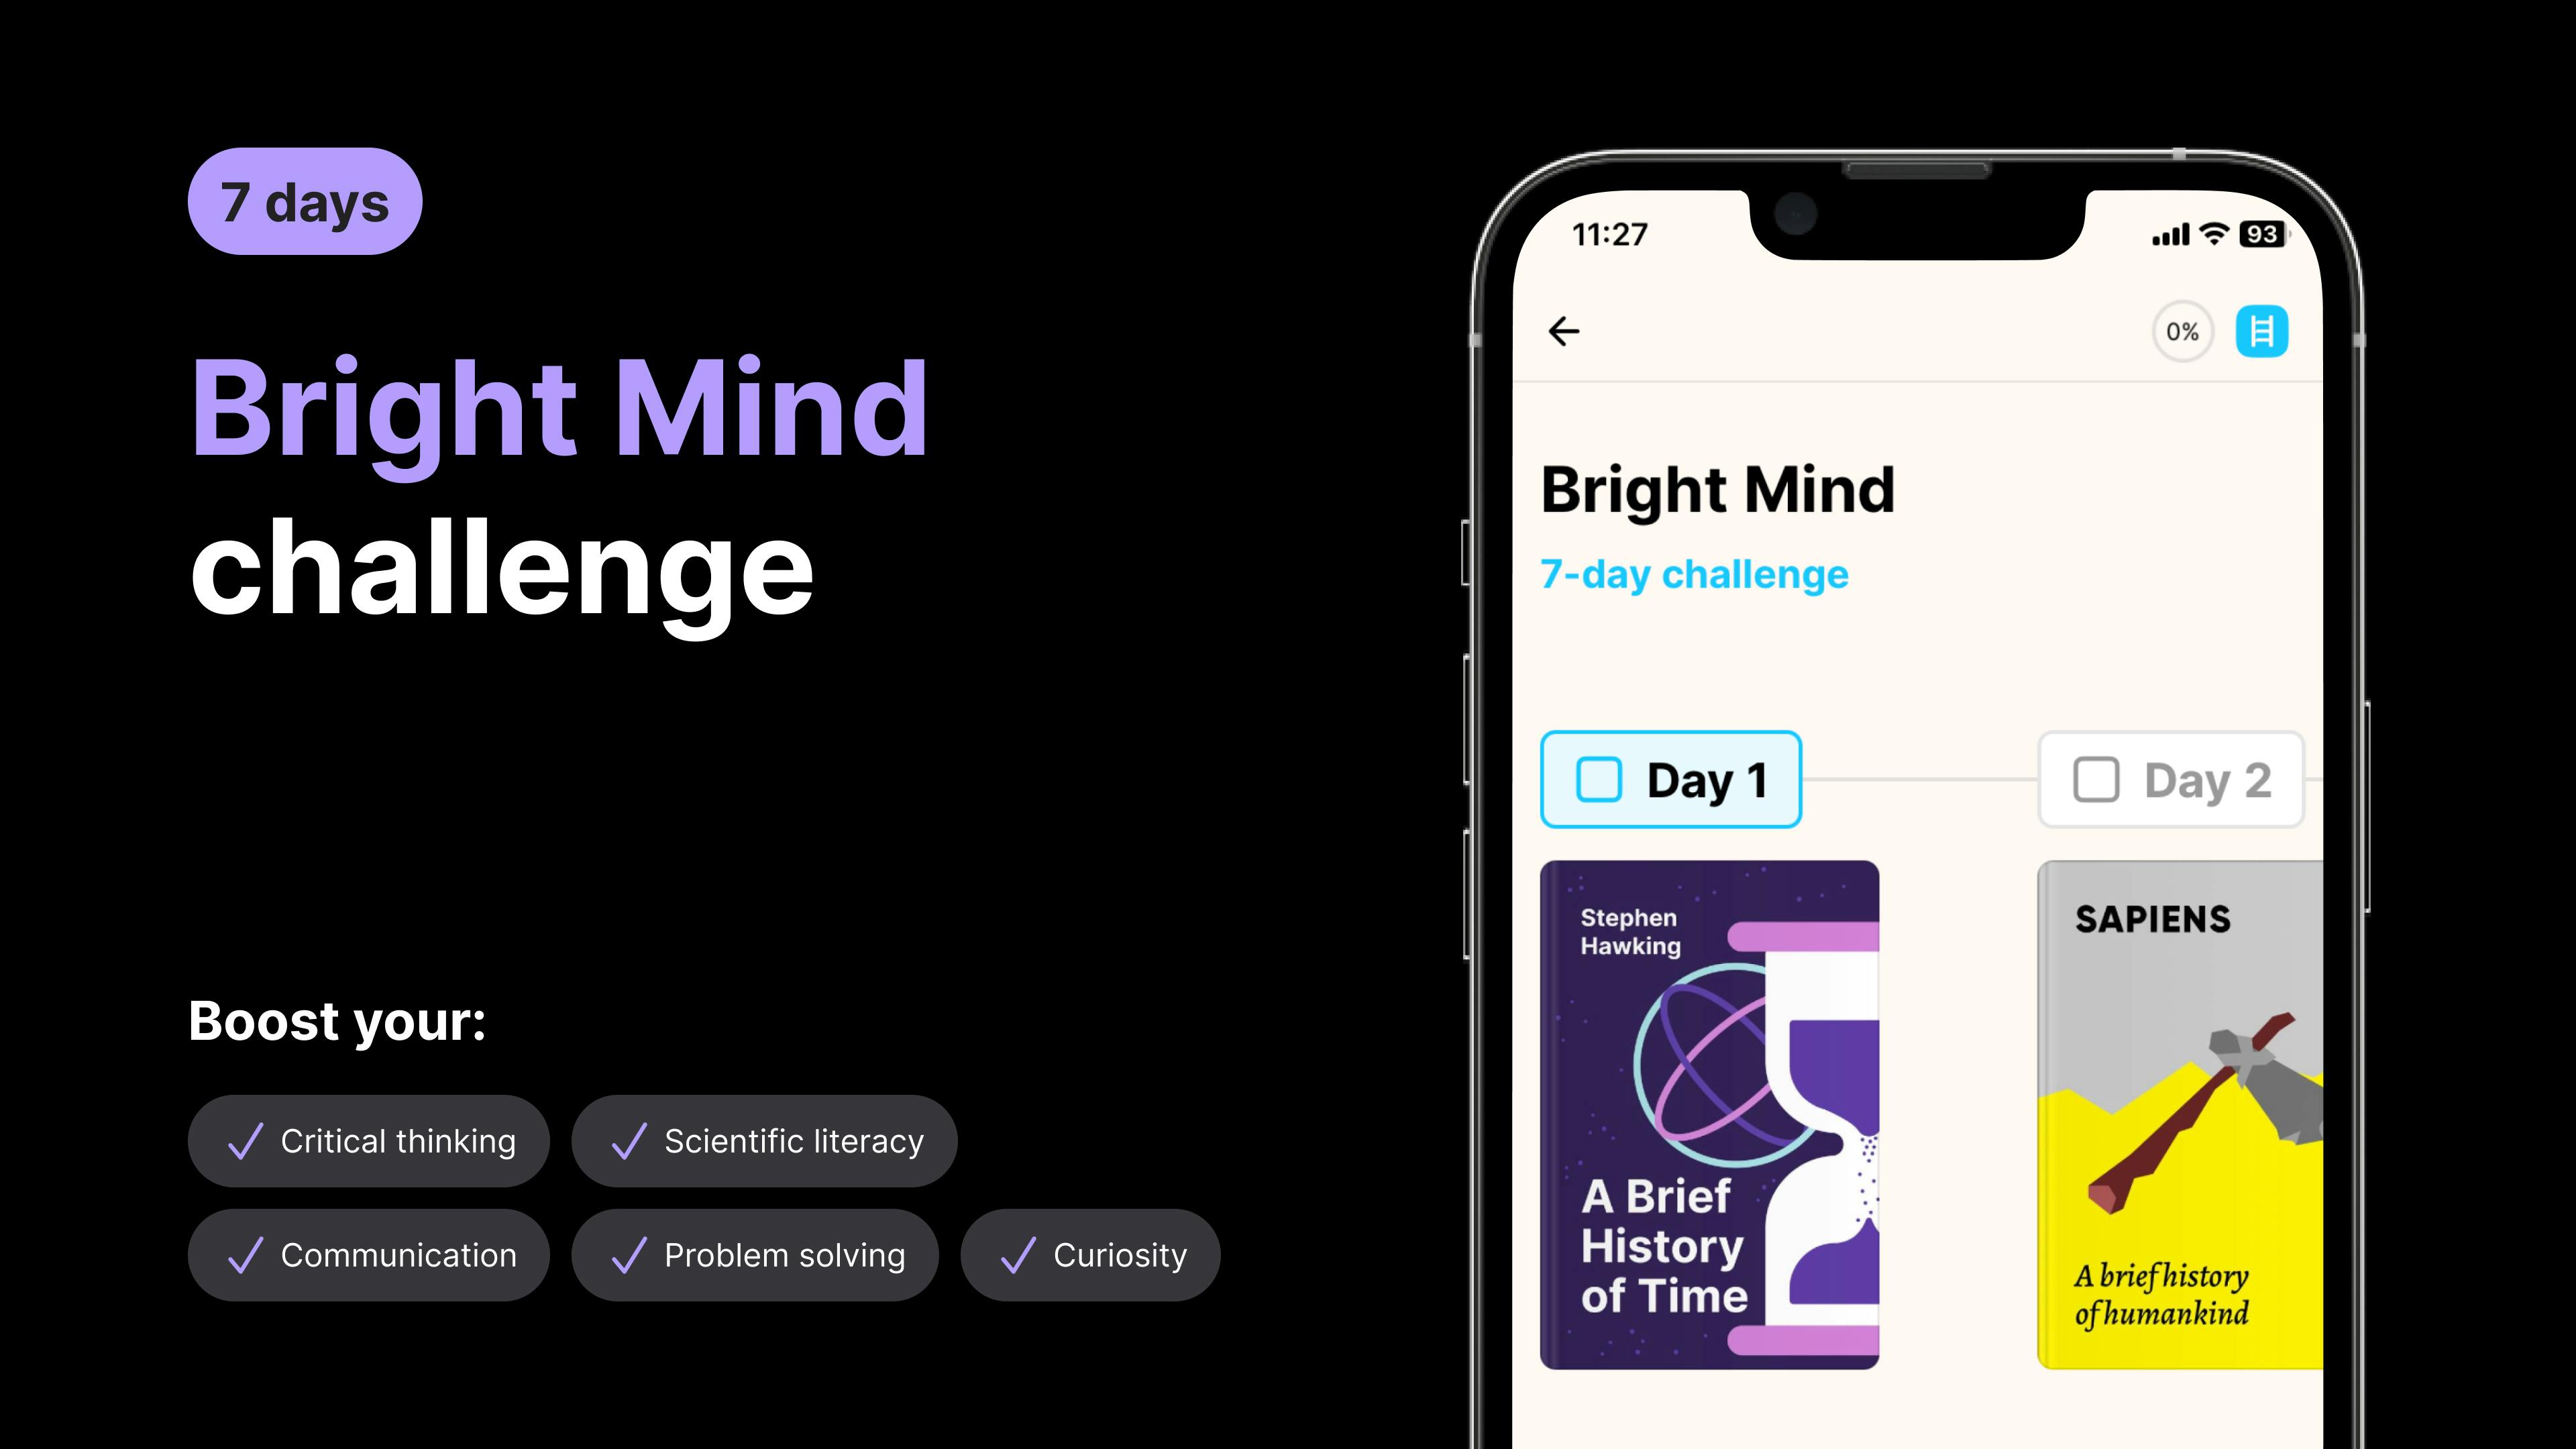 Bright mind challenge